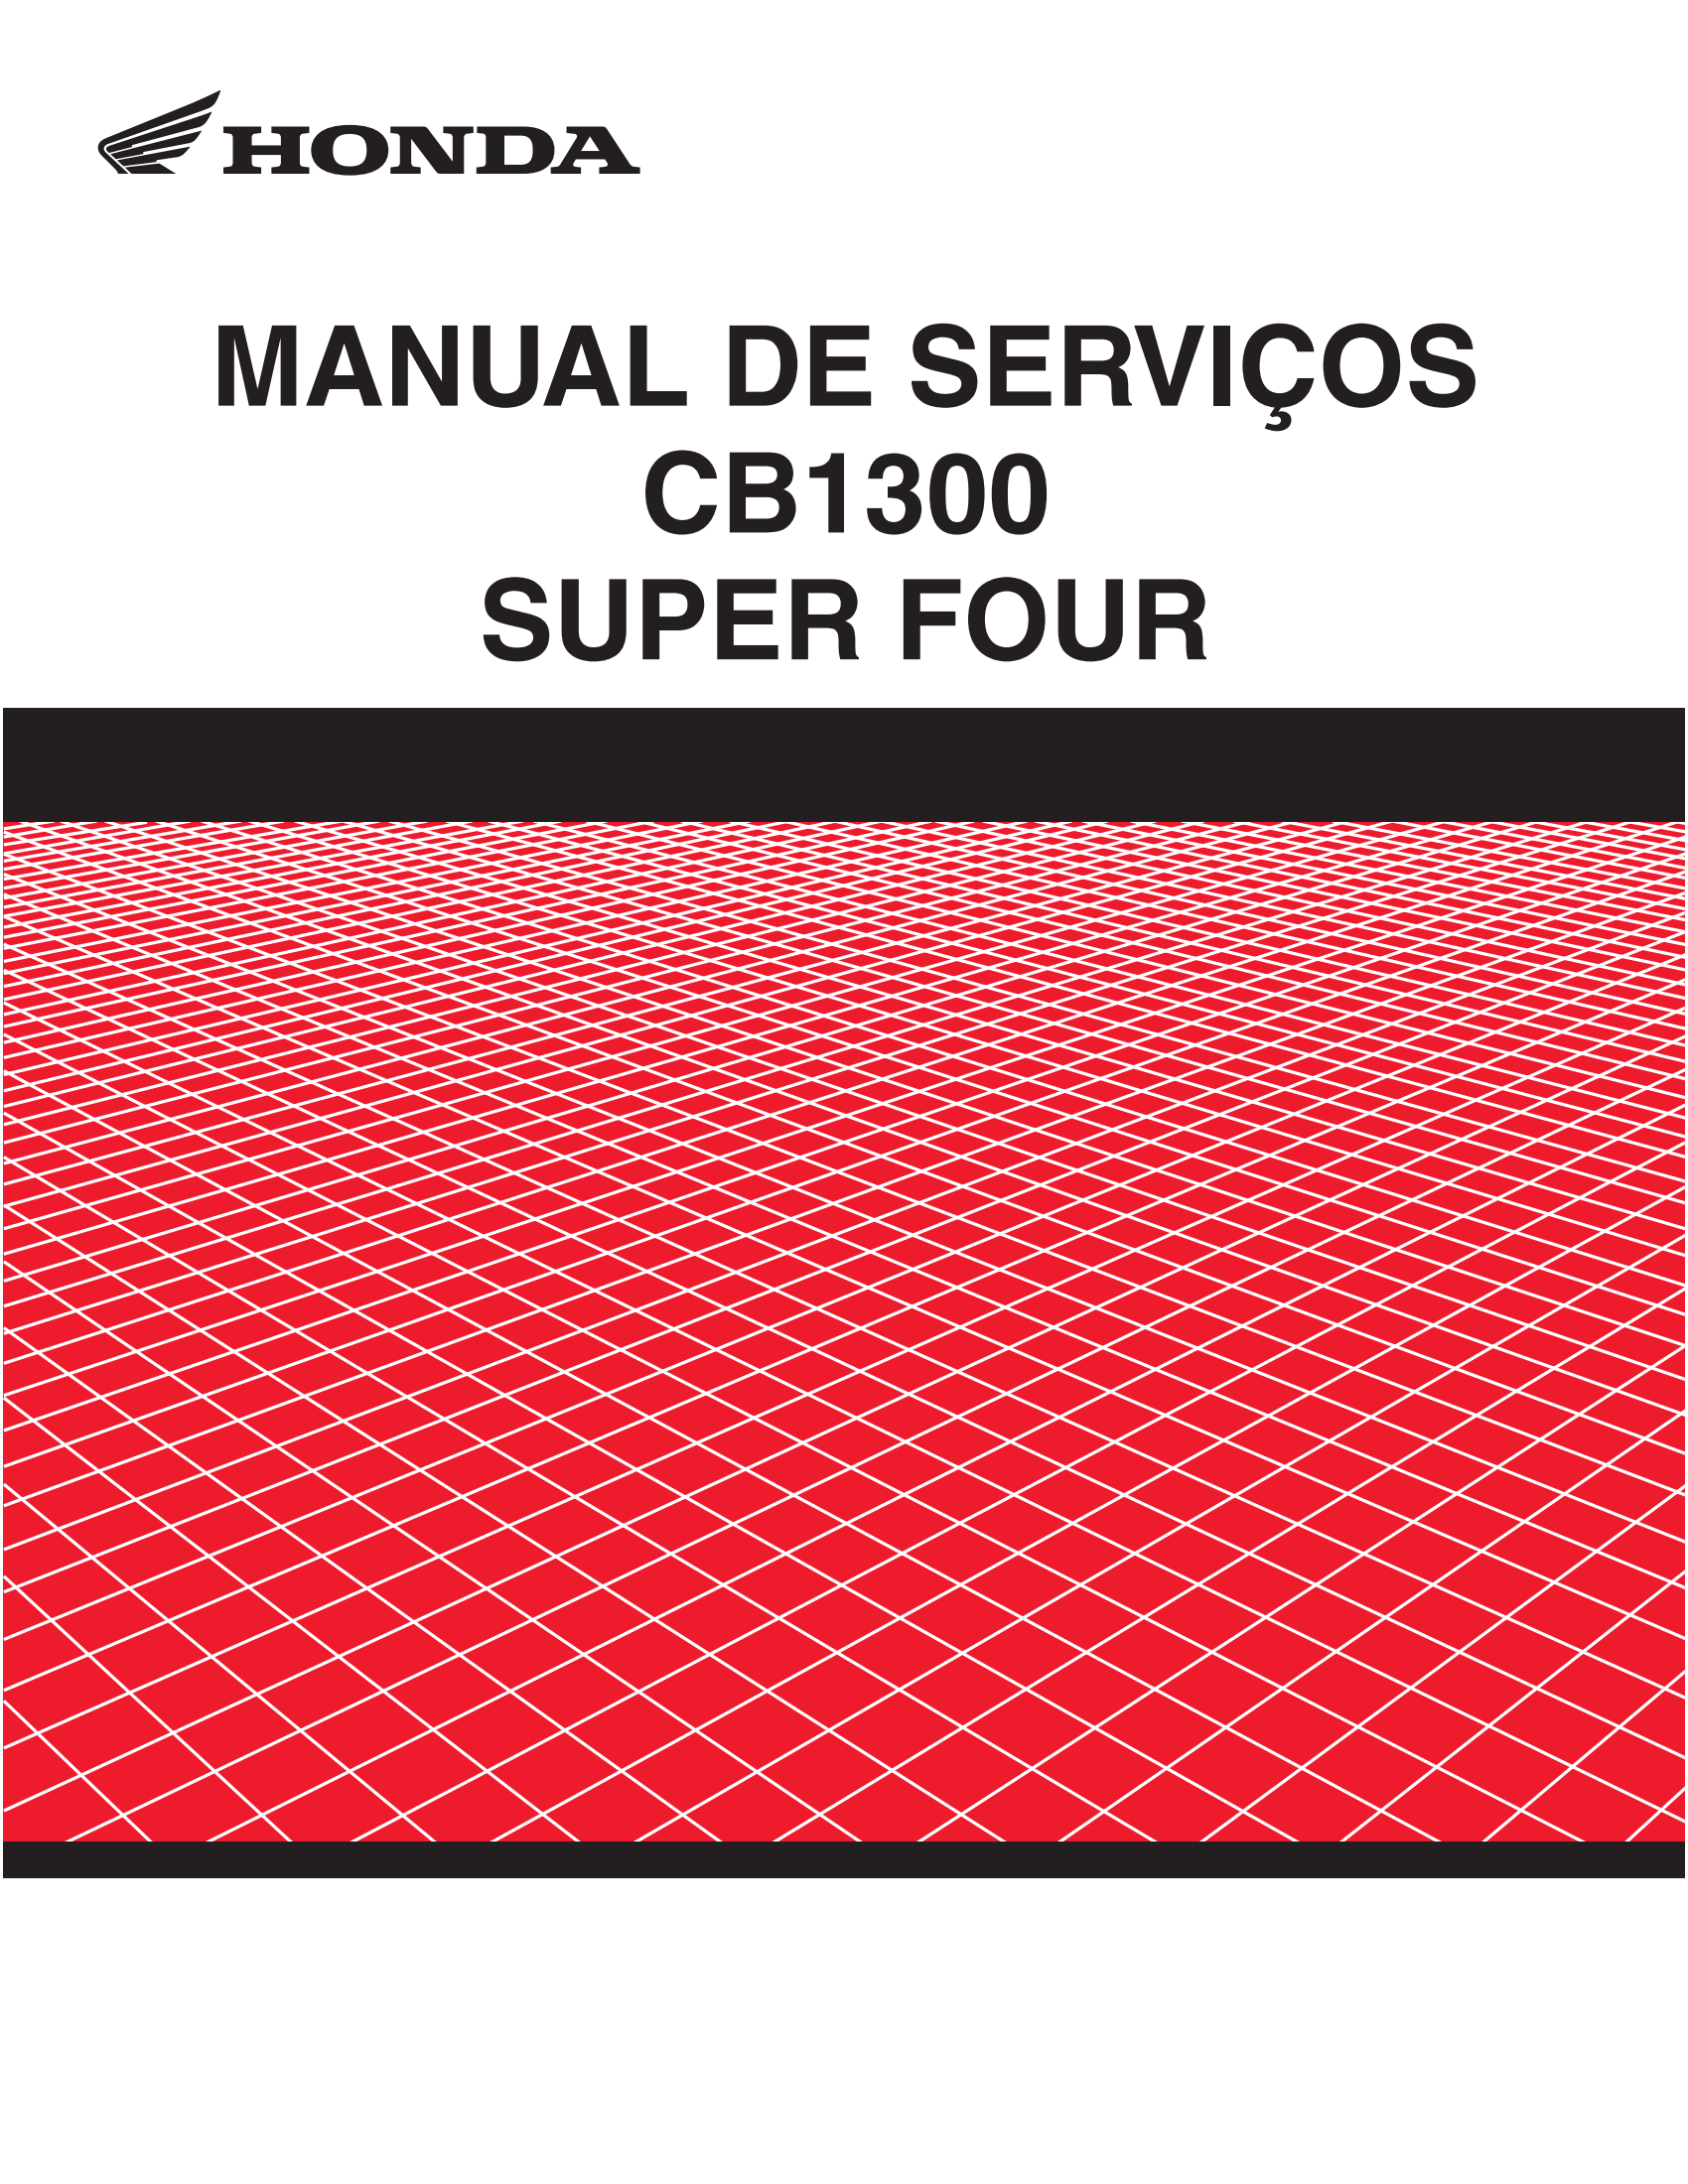 原版葡萄牙语2008-2013年本田cb1300维修手册CB1300 SUPER FOUR维修手册插图